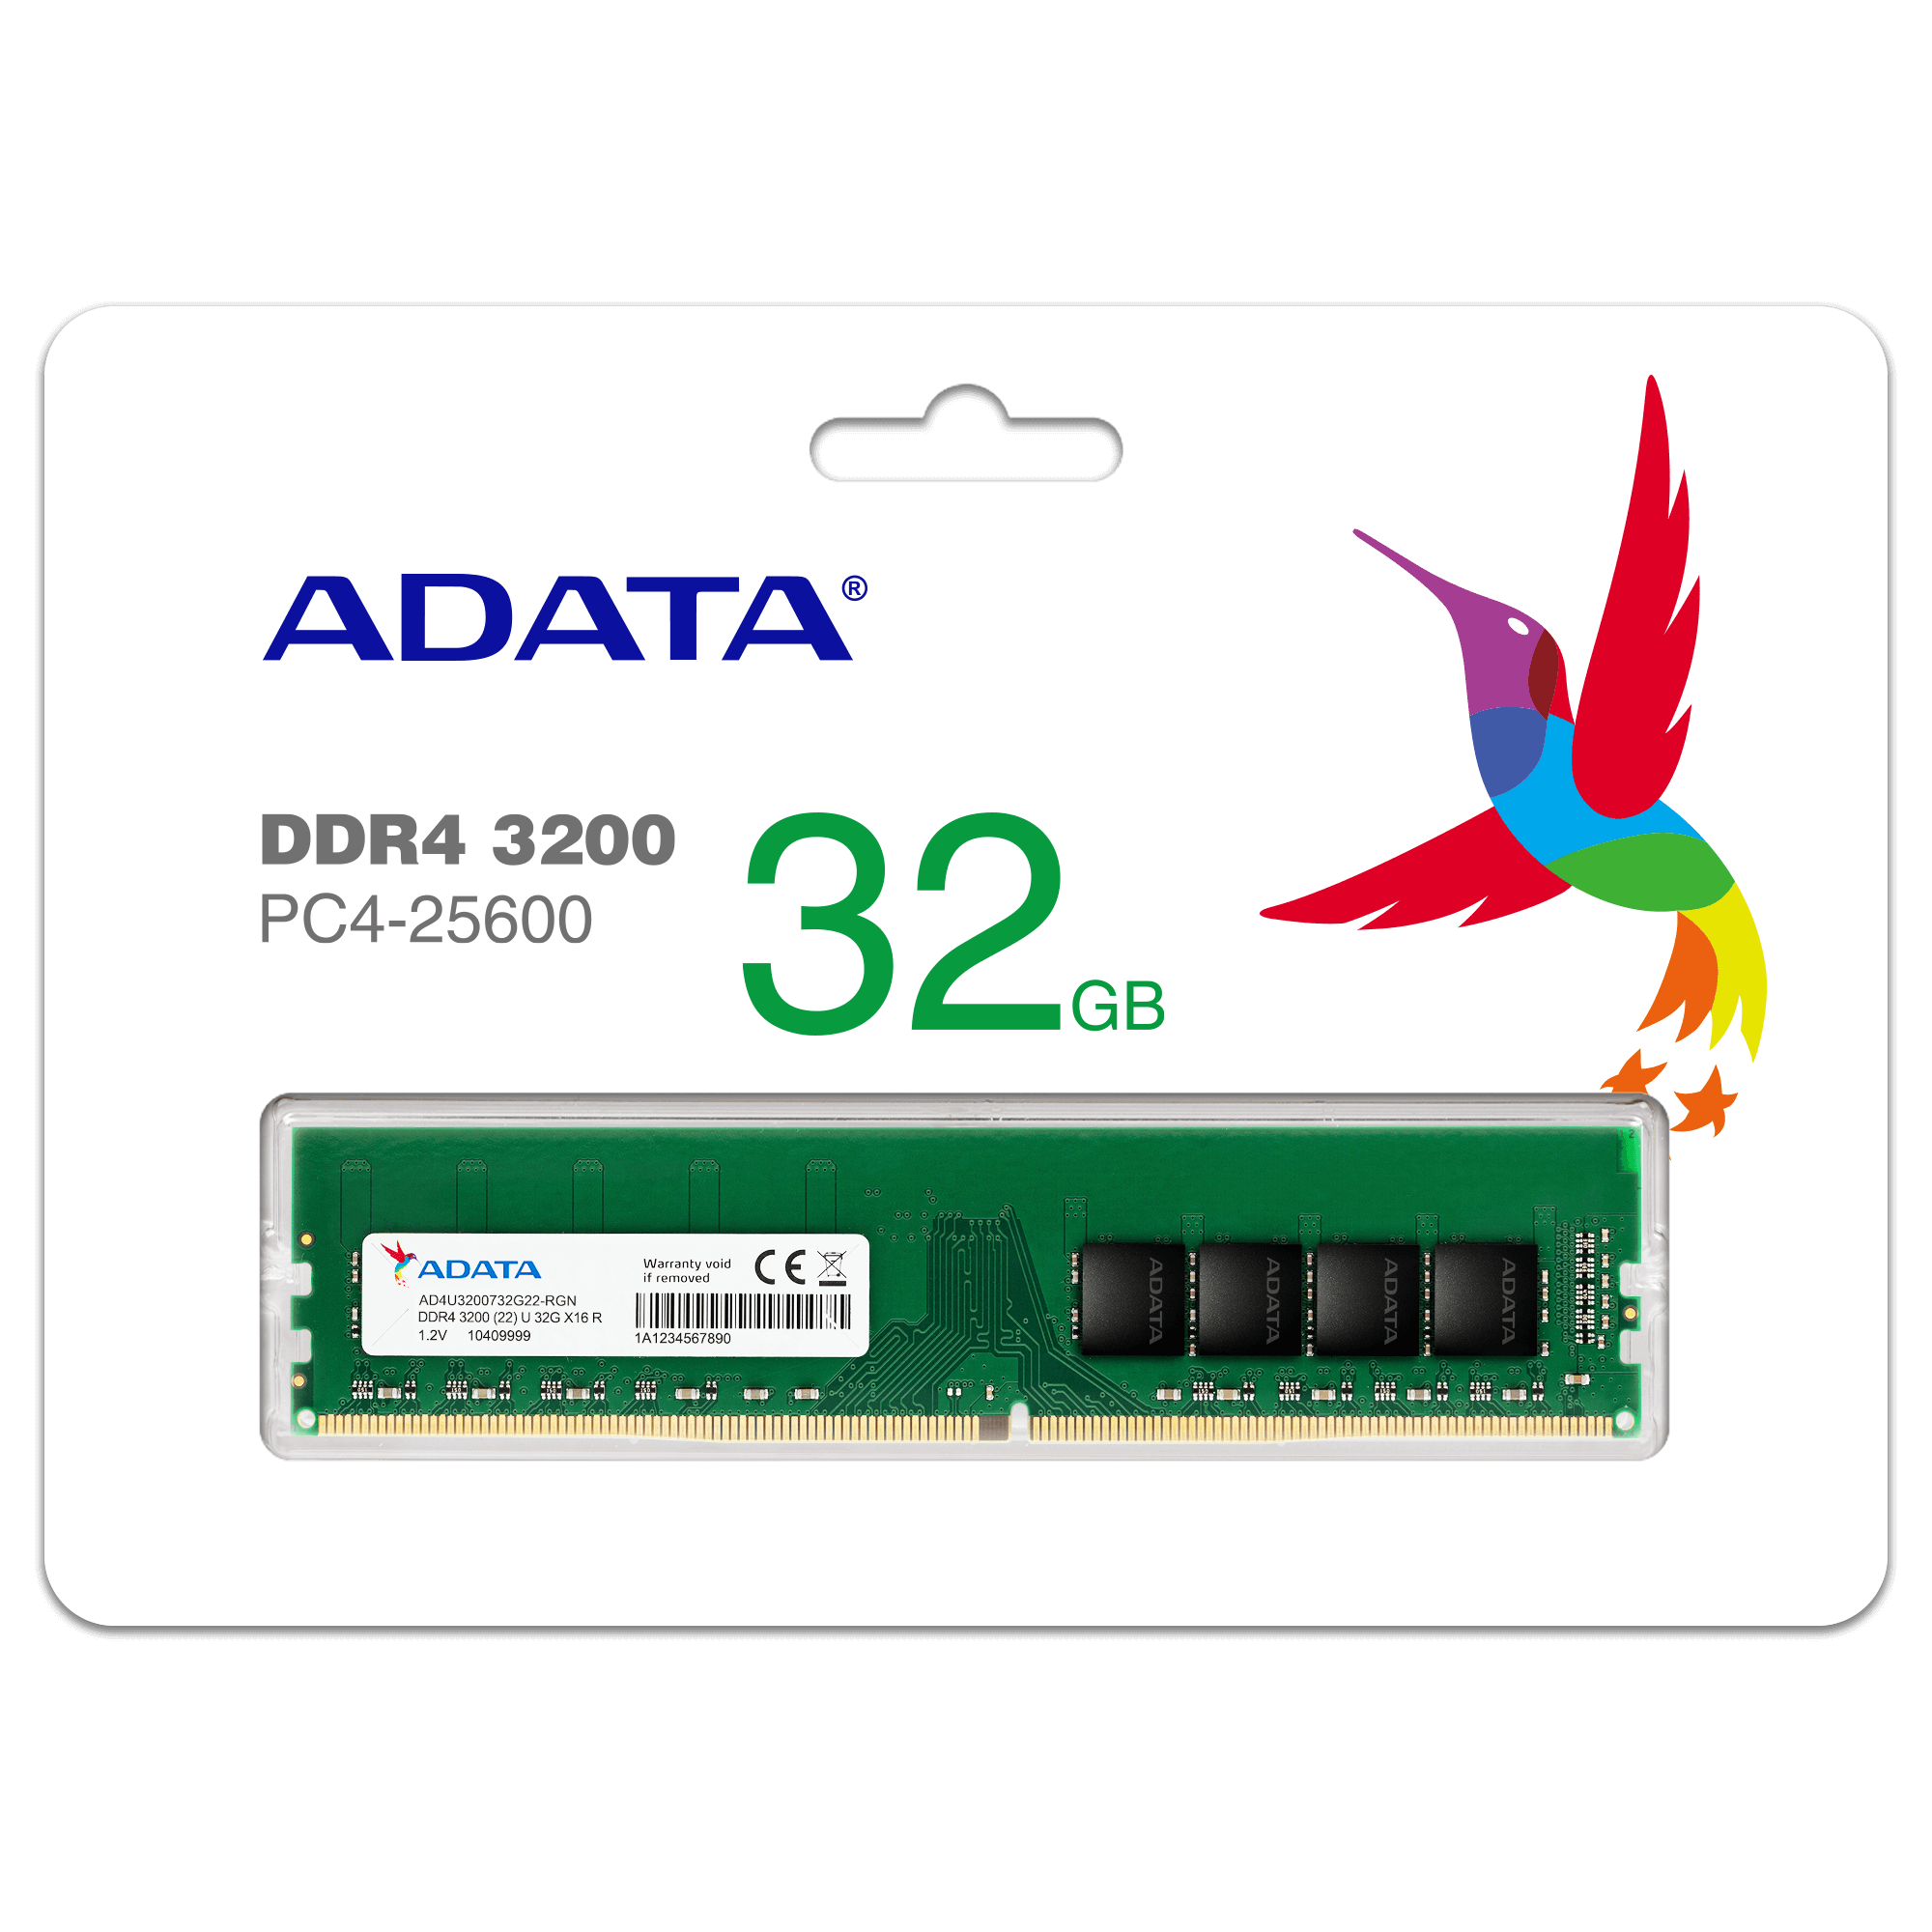 プレミア DDR4 3200 U-DIMM メモリモジュール